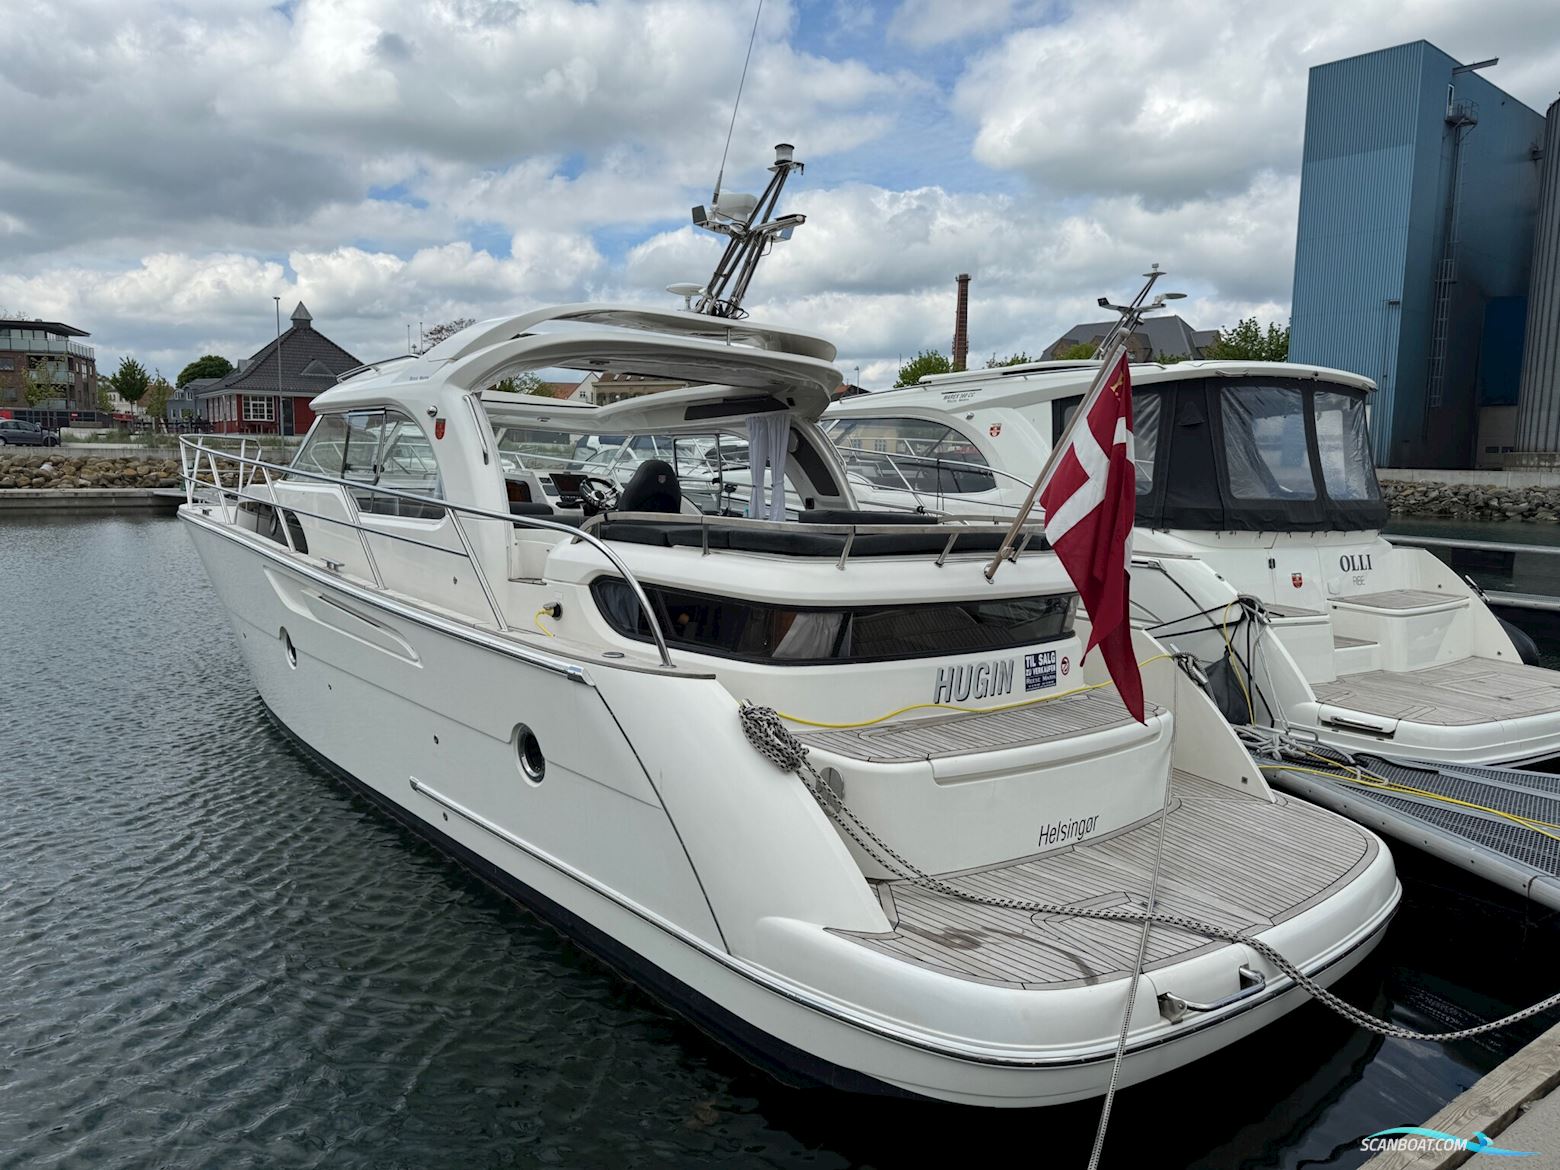 Marex 370 Aft Cabin Cruiser 2011 Motorbåt 2011, Danmark